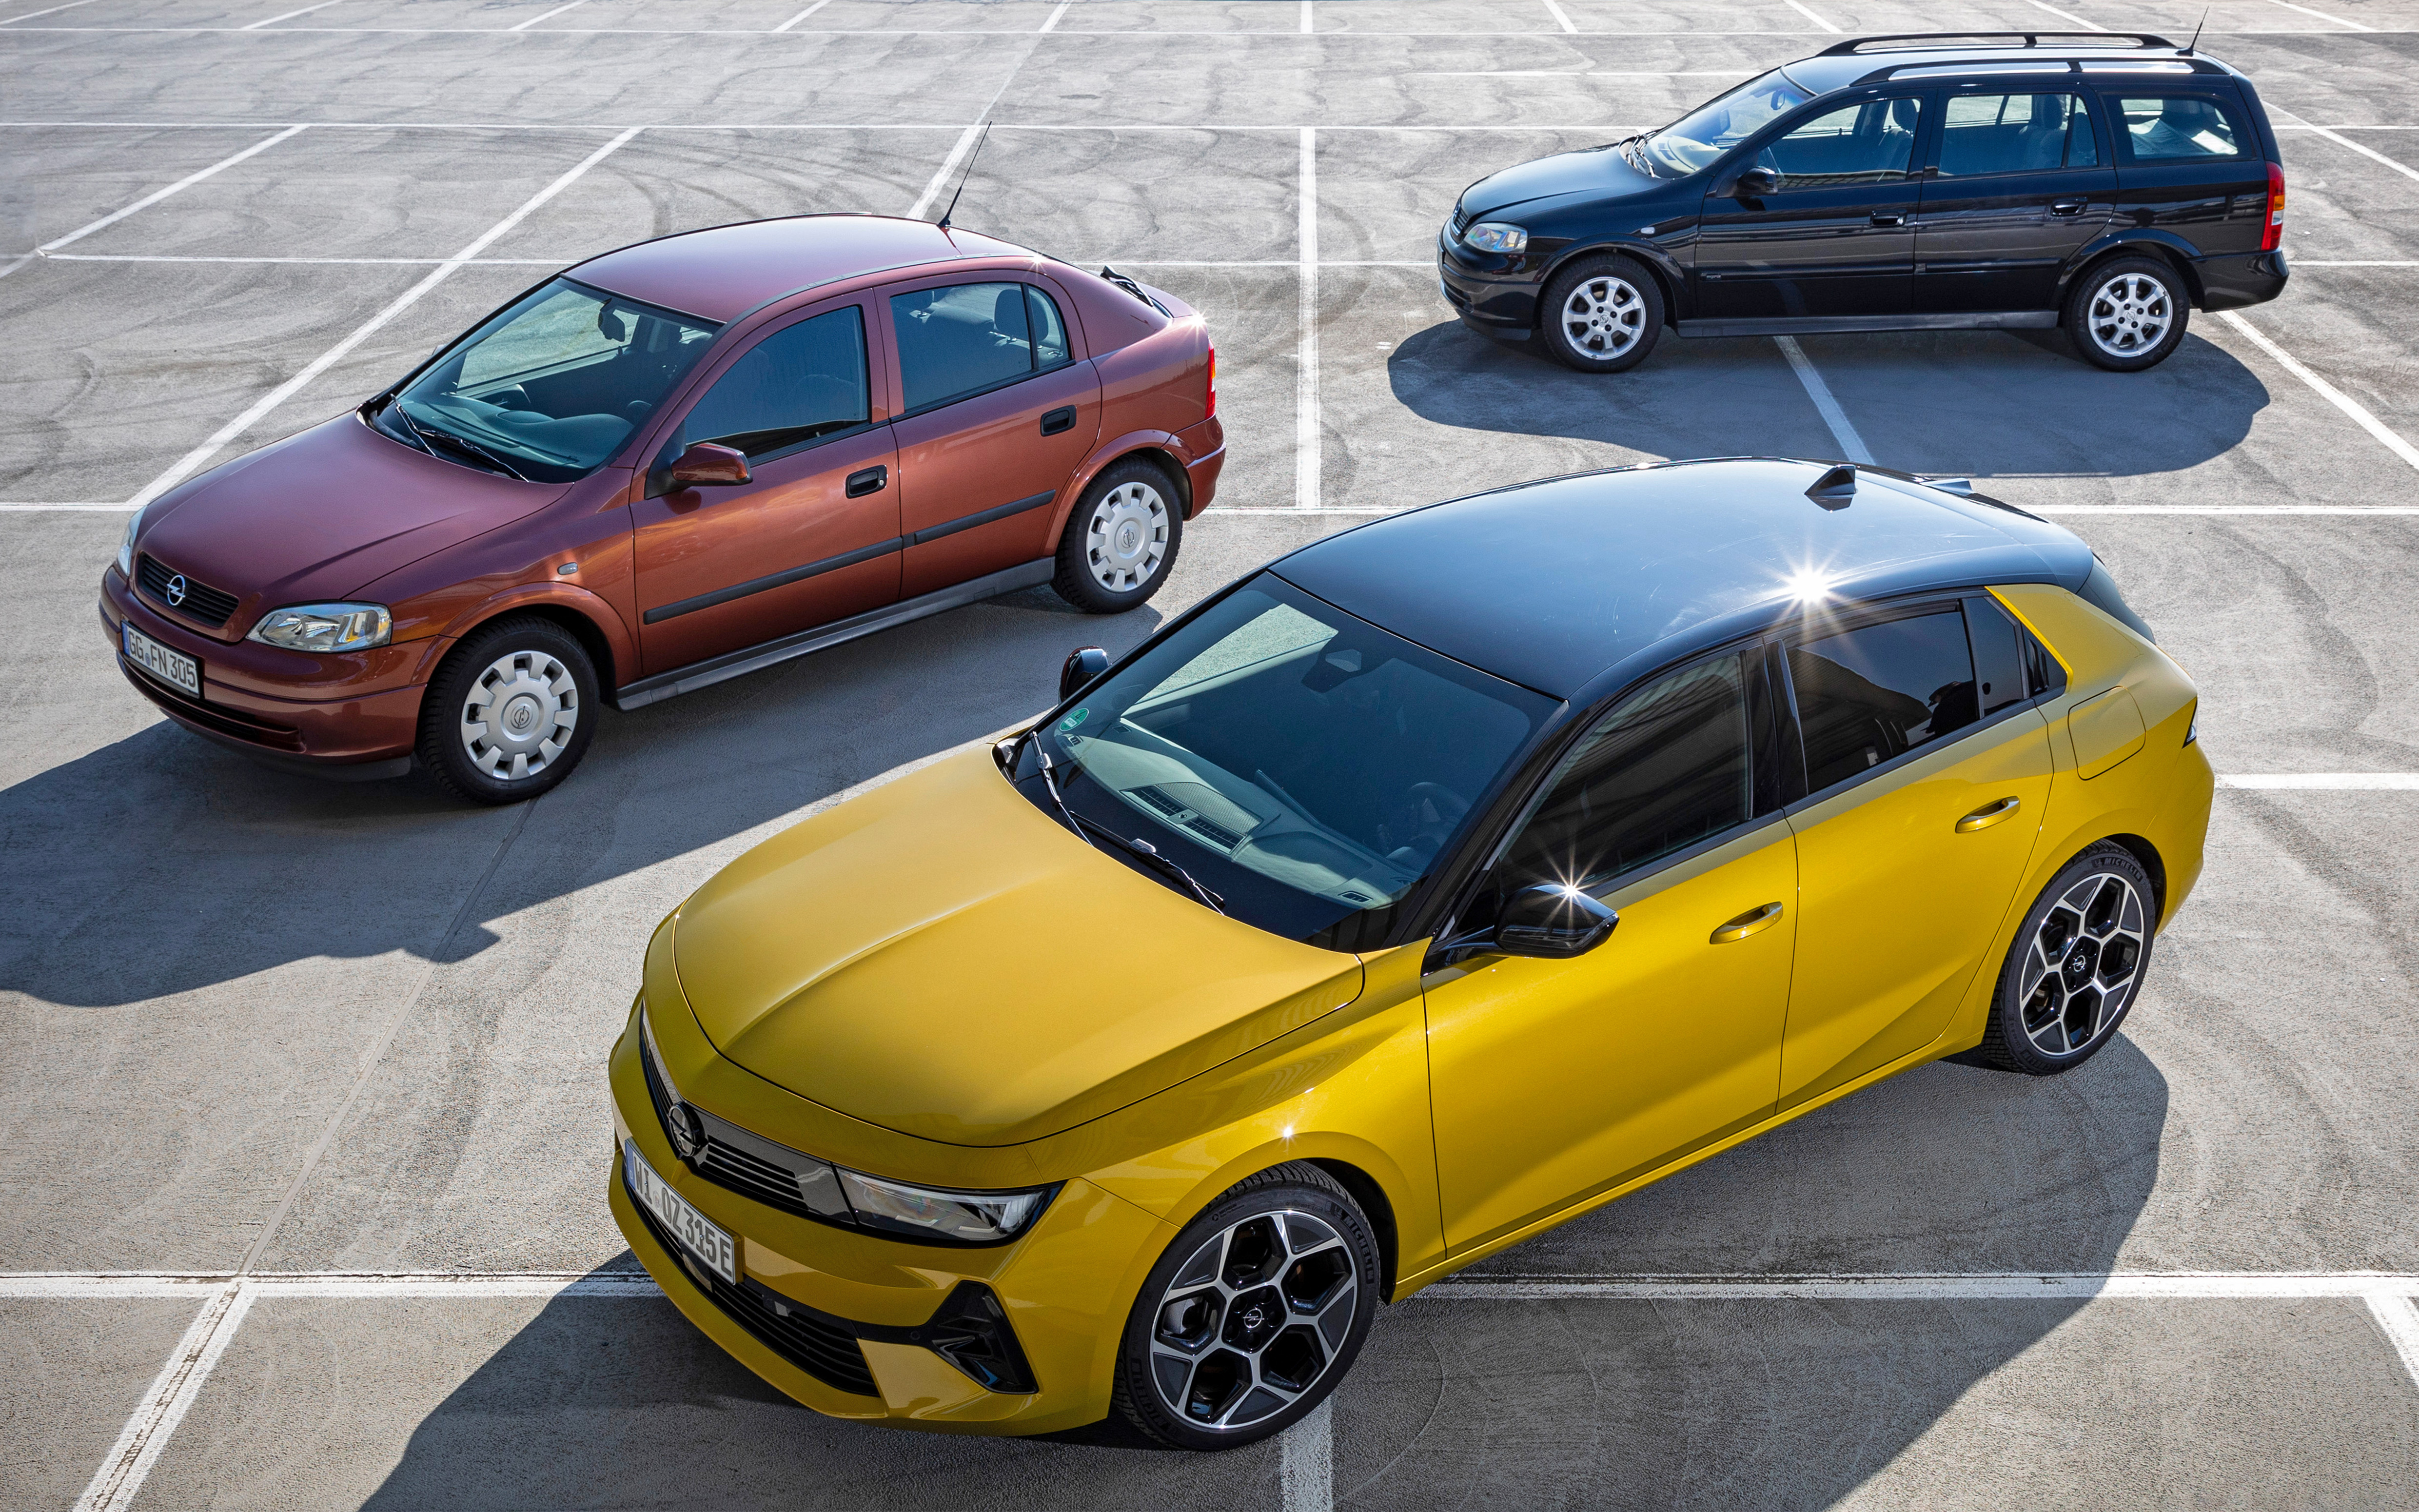 Marktstart vor 25 Jahren: Opel Astra G – Kompaktklasse mit Power, Opel